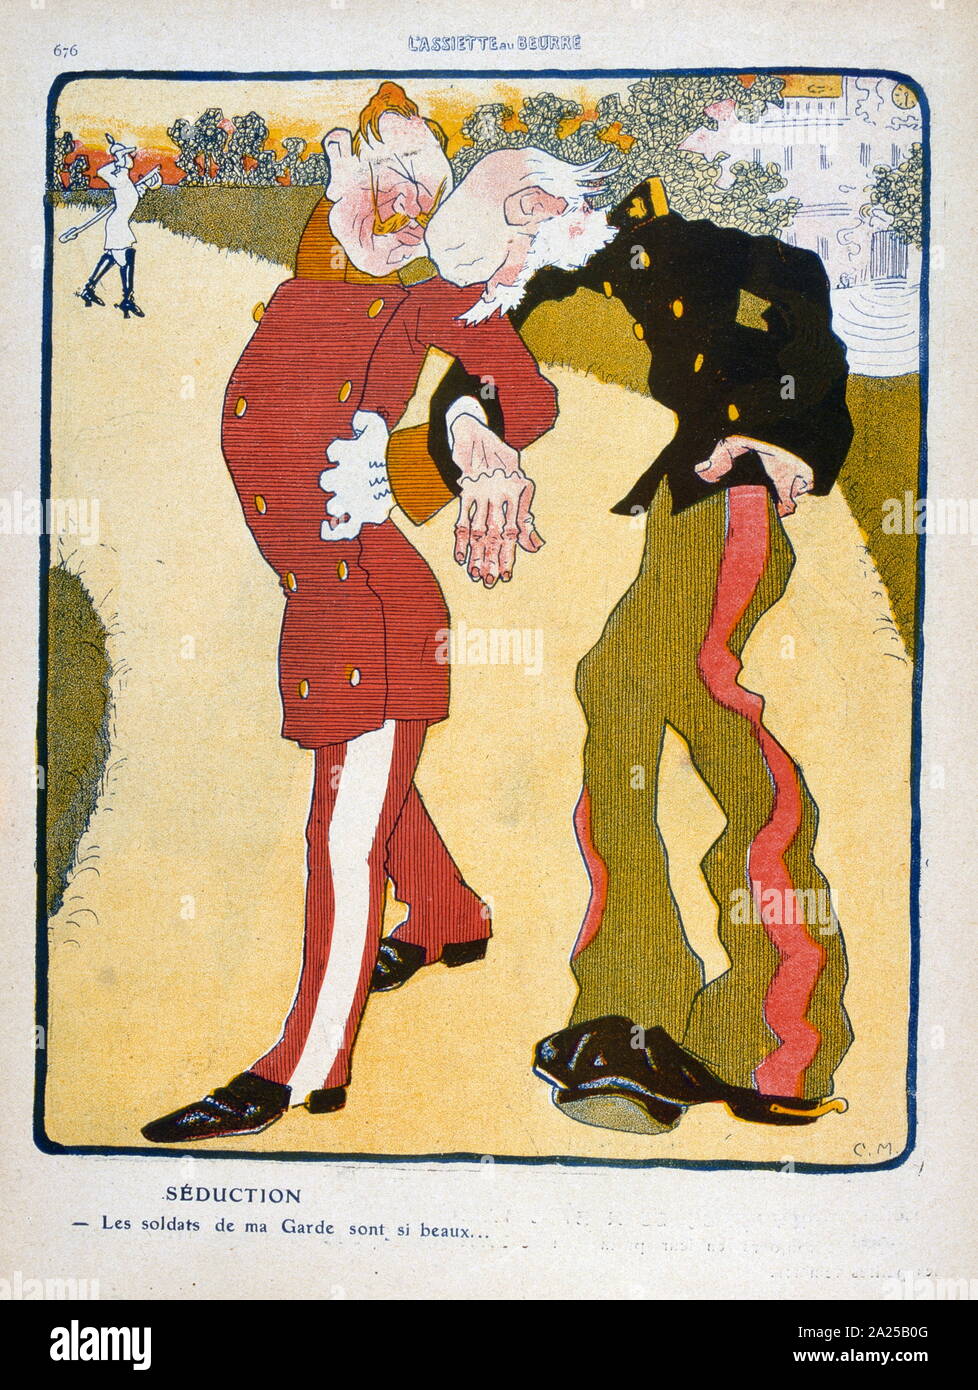 Illustrazione di una rivista francese che raffigura una vista satirico dell'imperatore tedesco Wilhelm II con l'imperatore austriaco Franz Joseph I nel 1909 Foto Stock